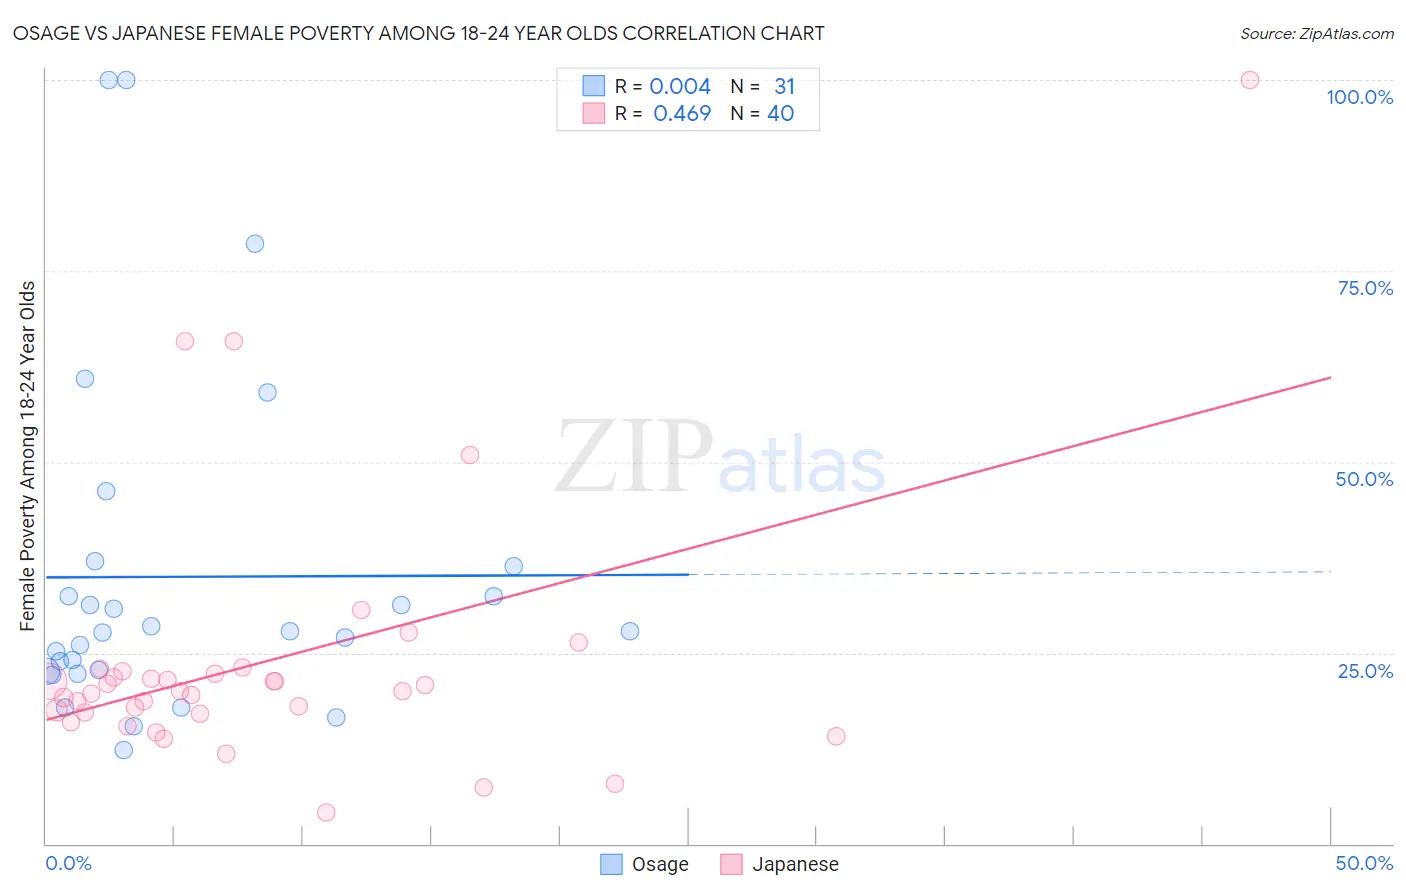 Osage vs Japanese Female Poverty Among 18-24 Year Olds